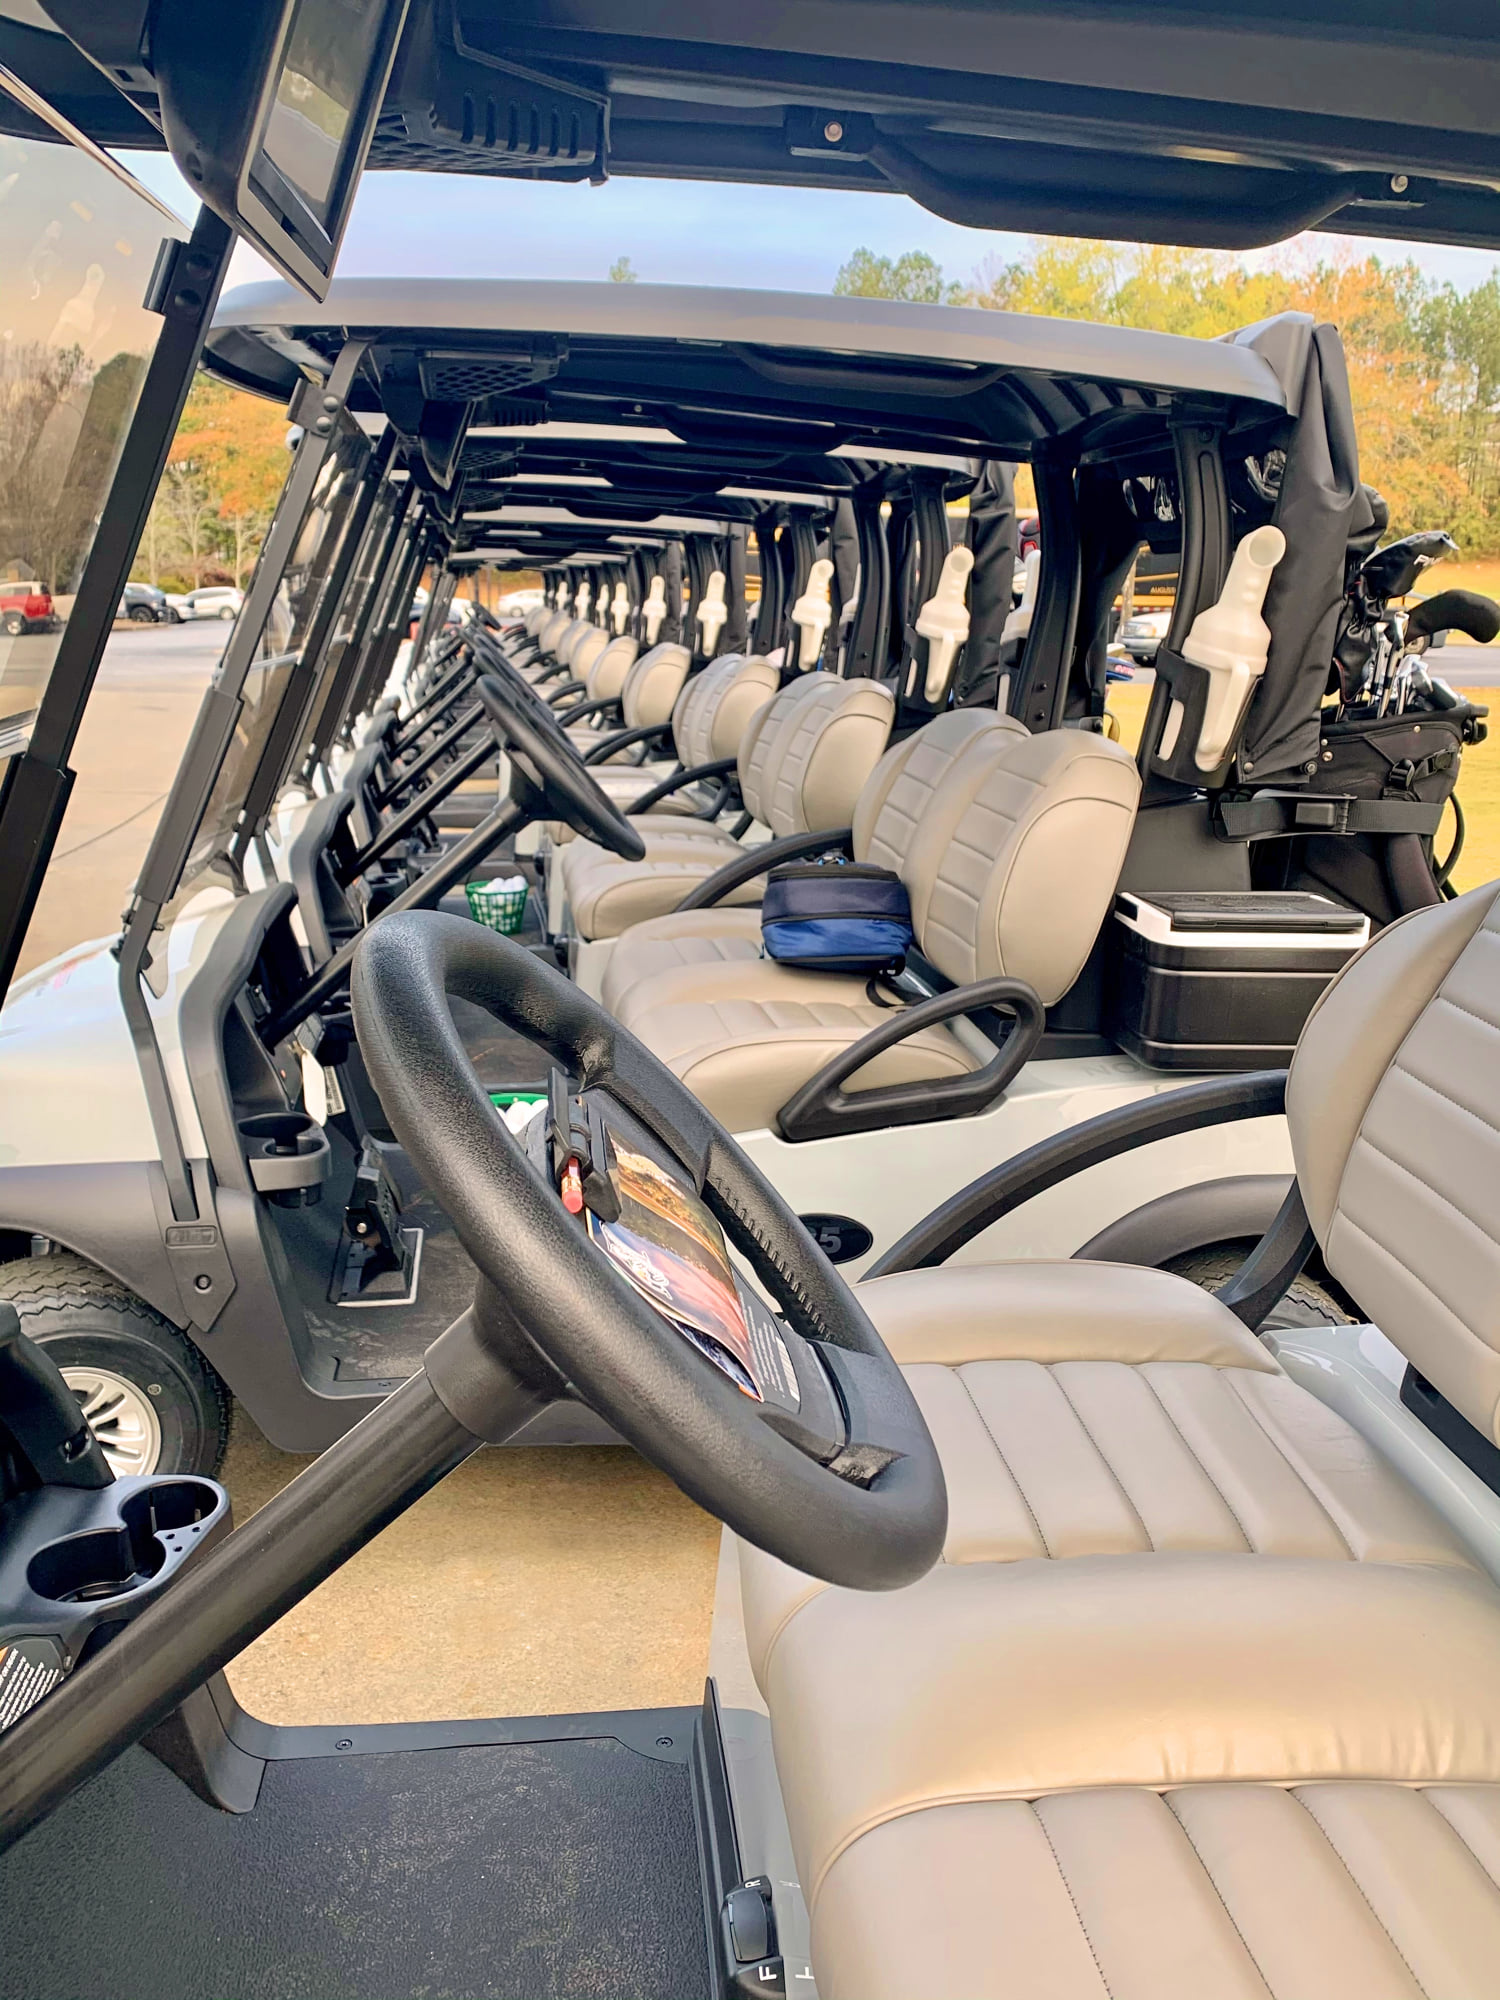 row of golf carts